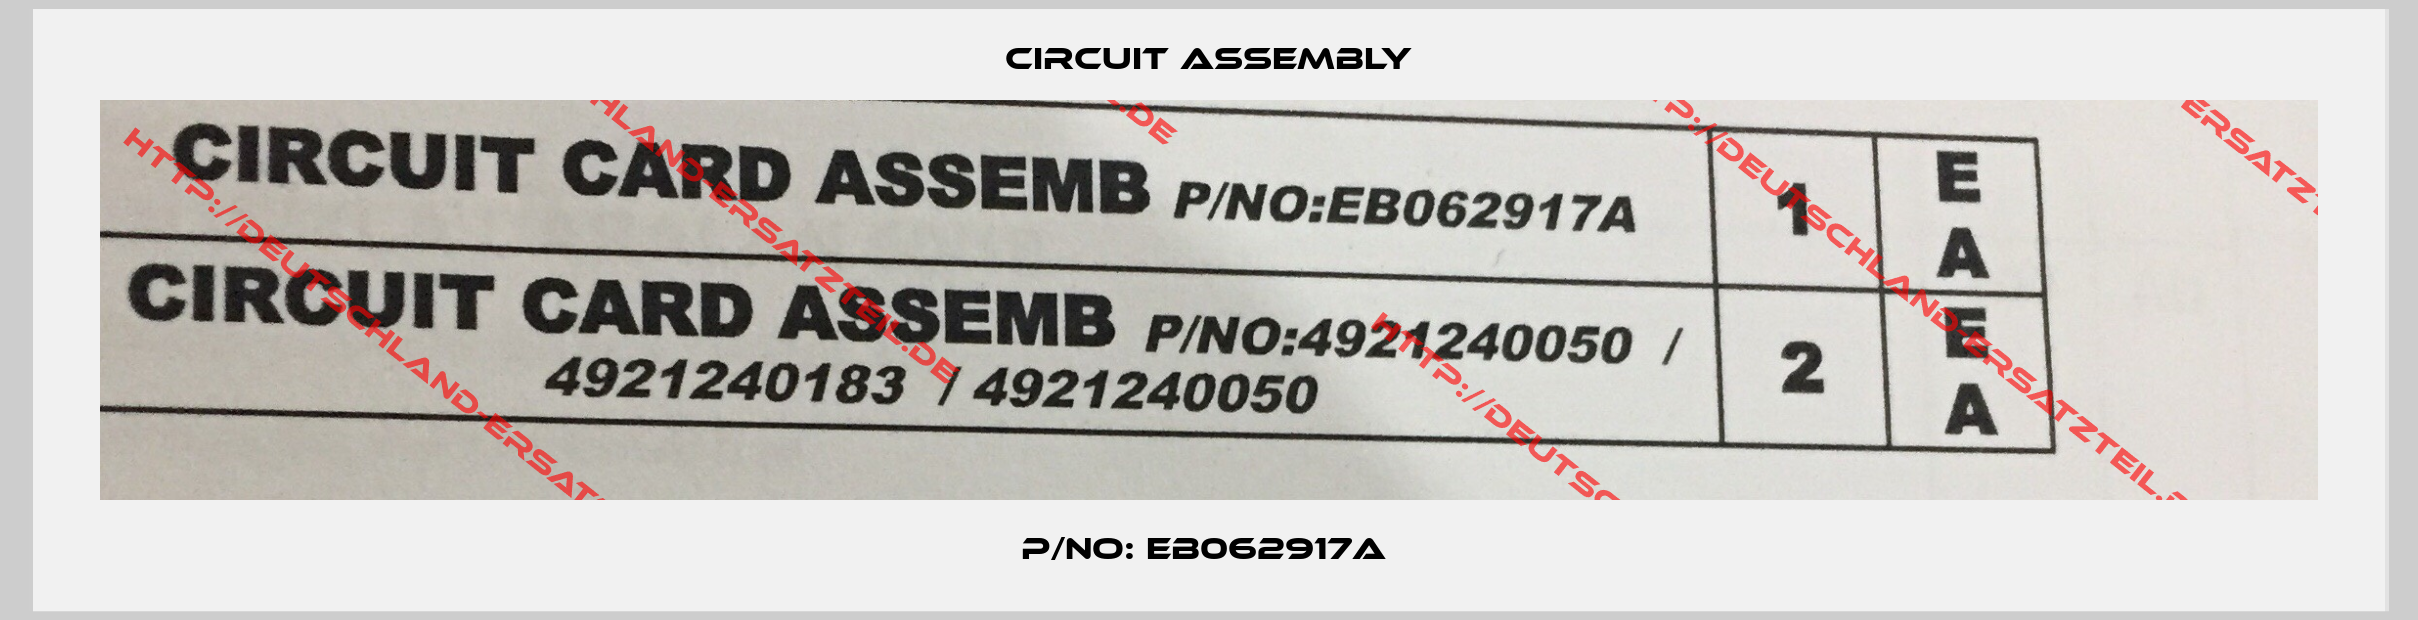 Circuit Assembly-P/NO: EB062917A 